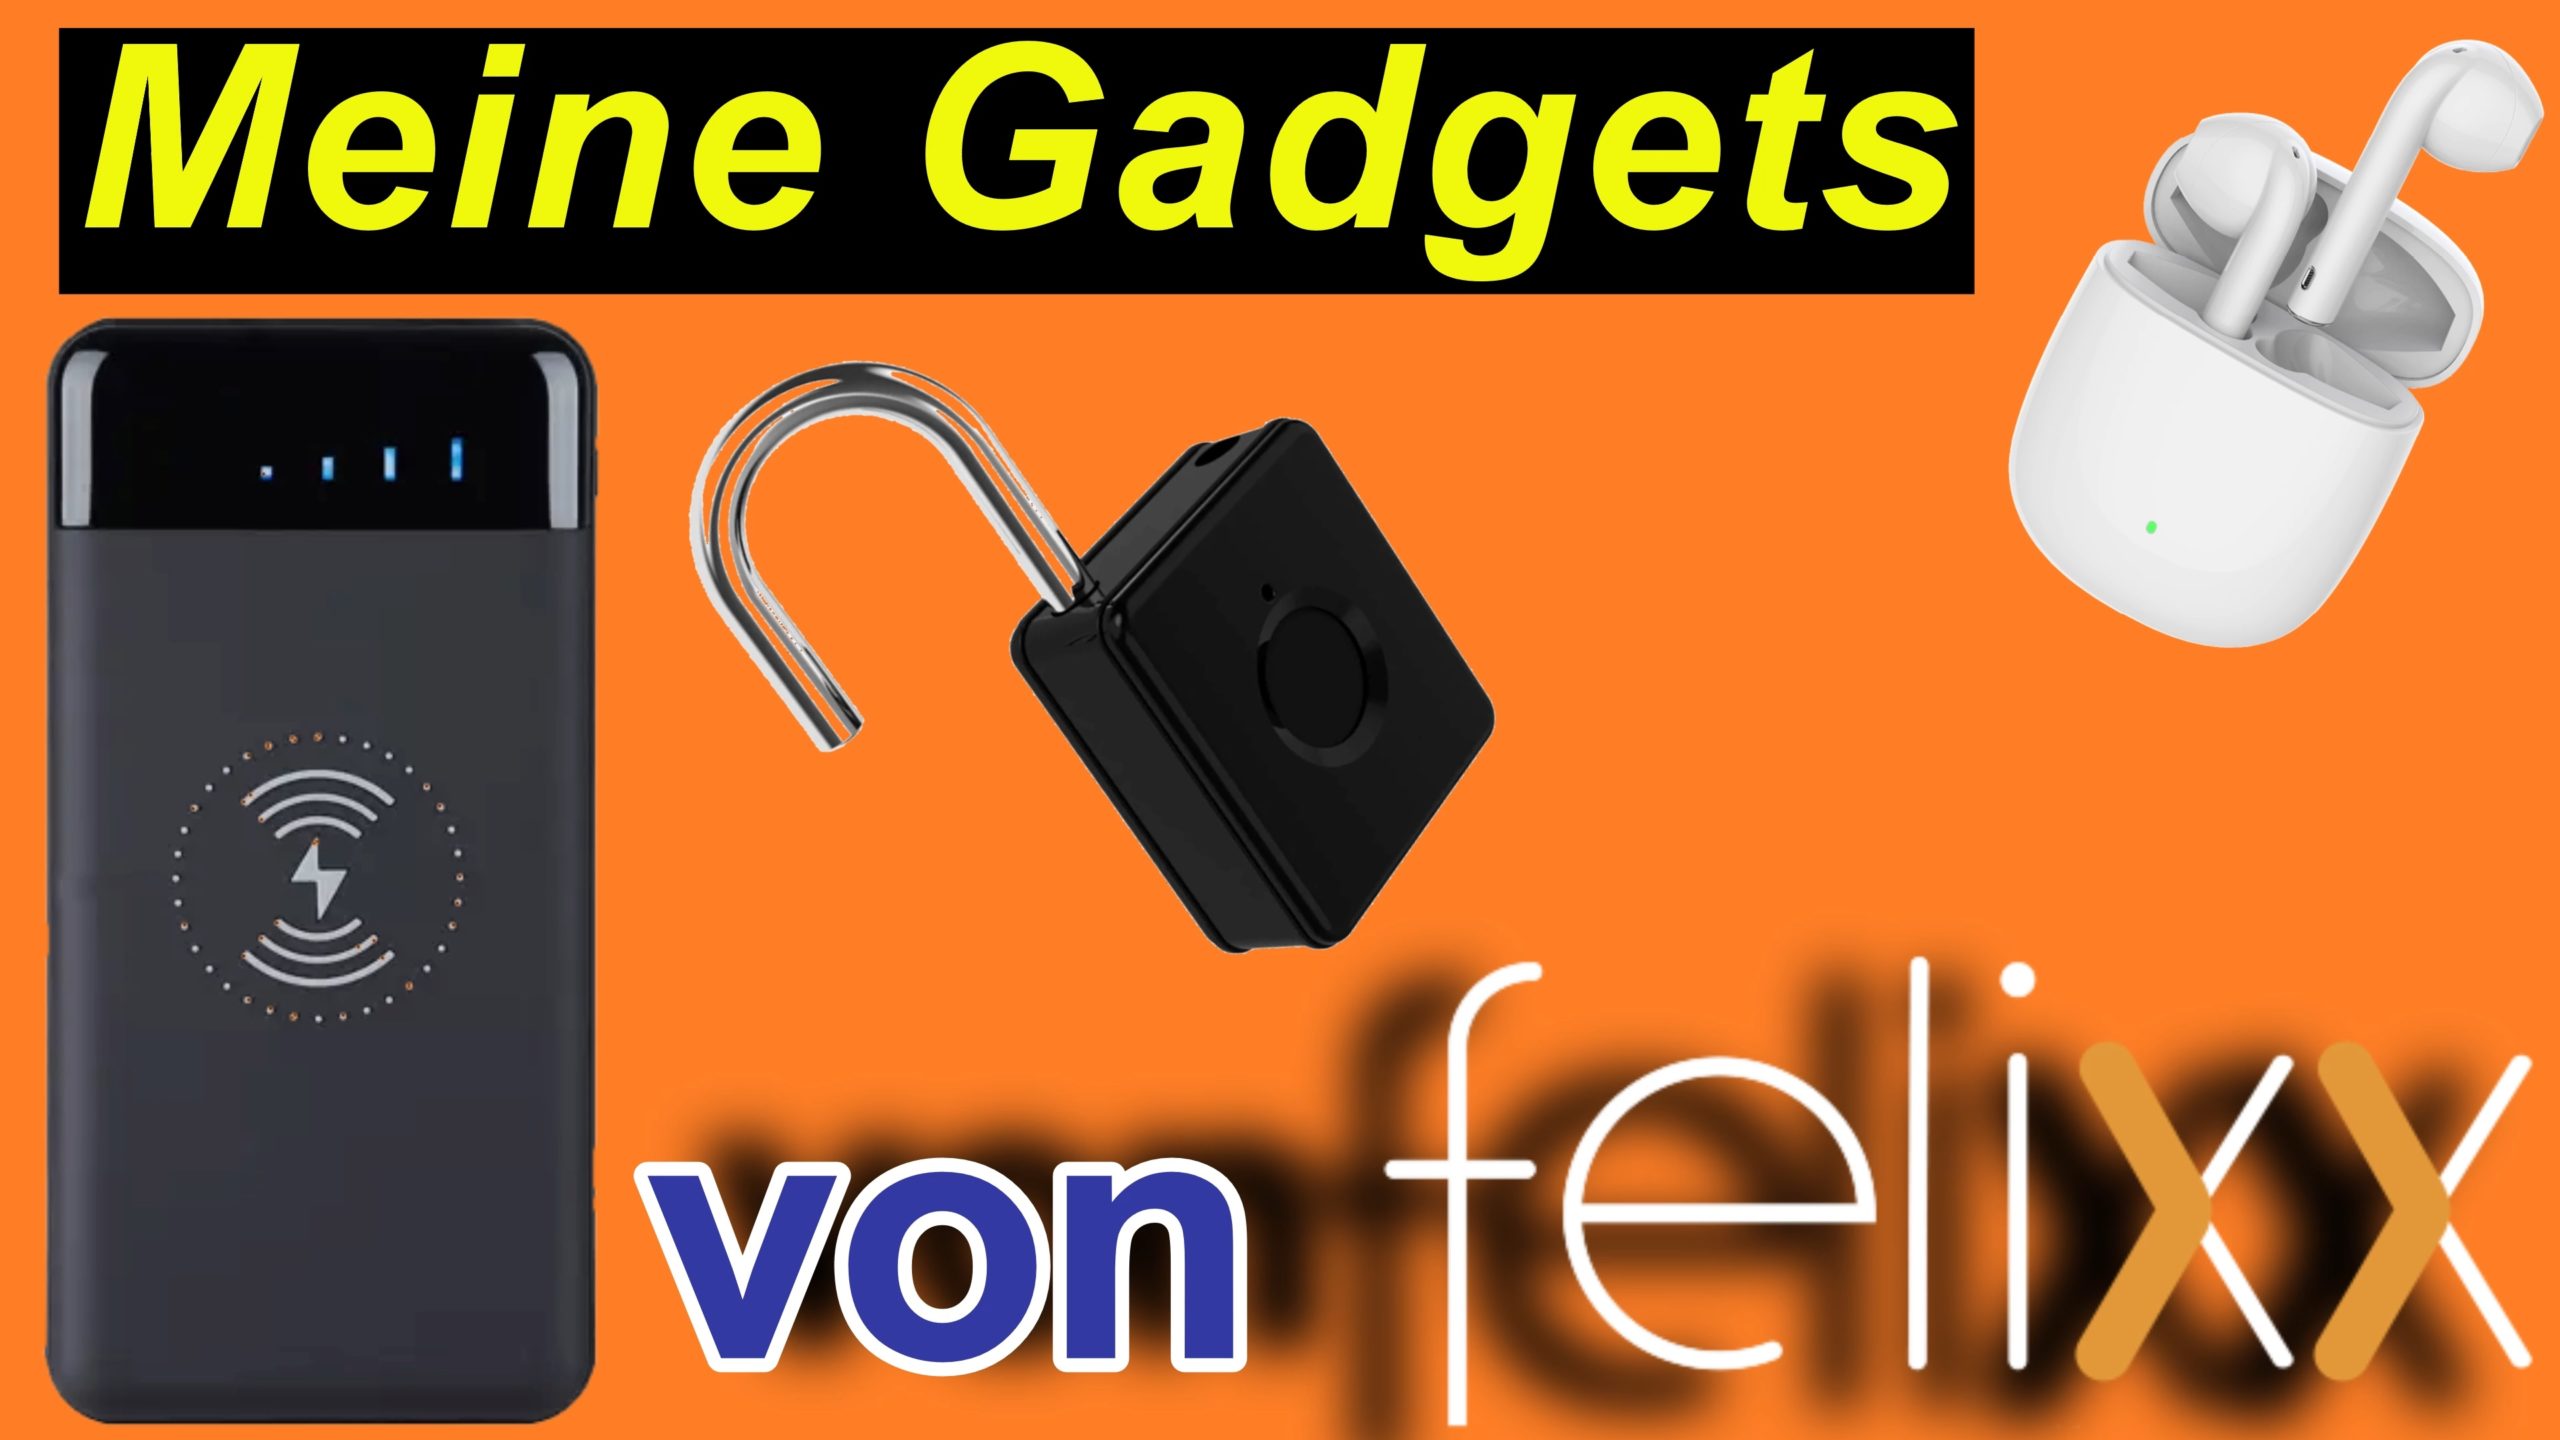 Vier hochwertige Gadgets von Felixx